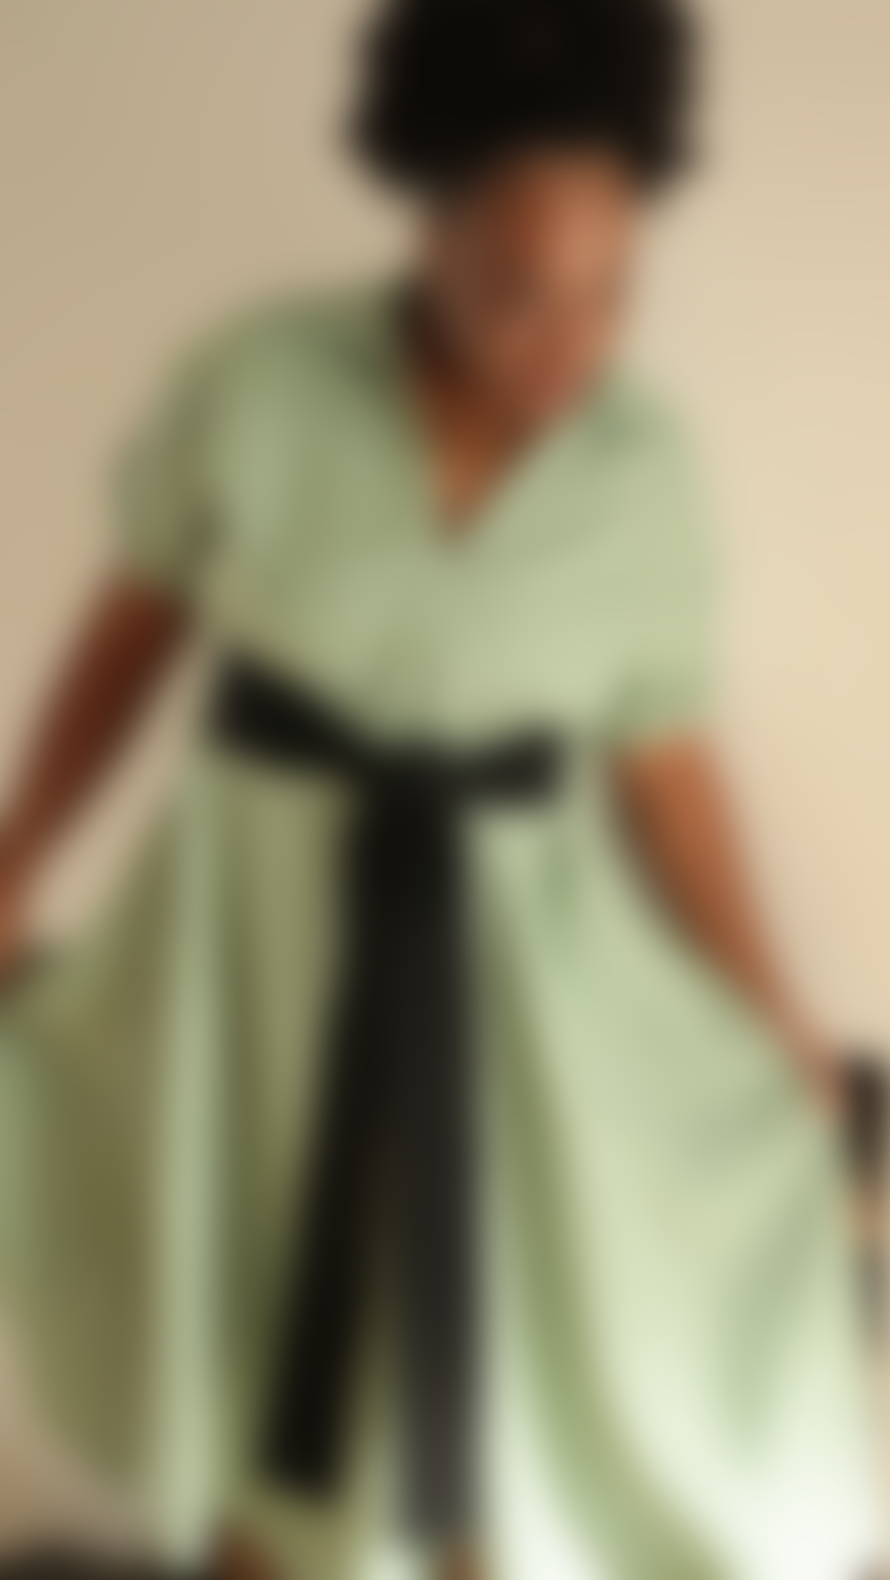 Lora Gene Aja's Linen Dress With Belt In Mint Green/black By